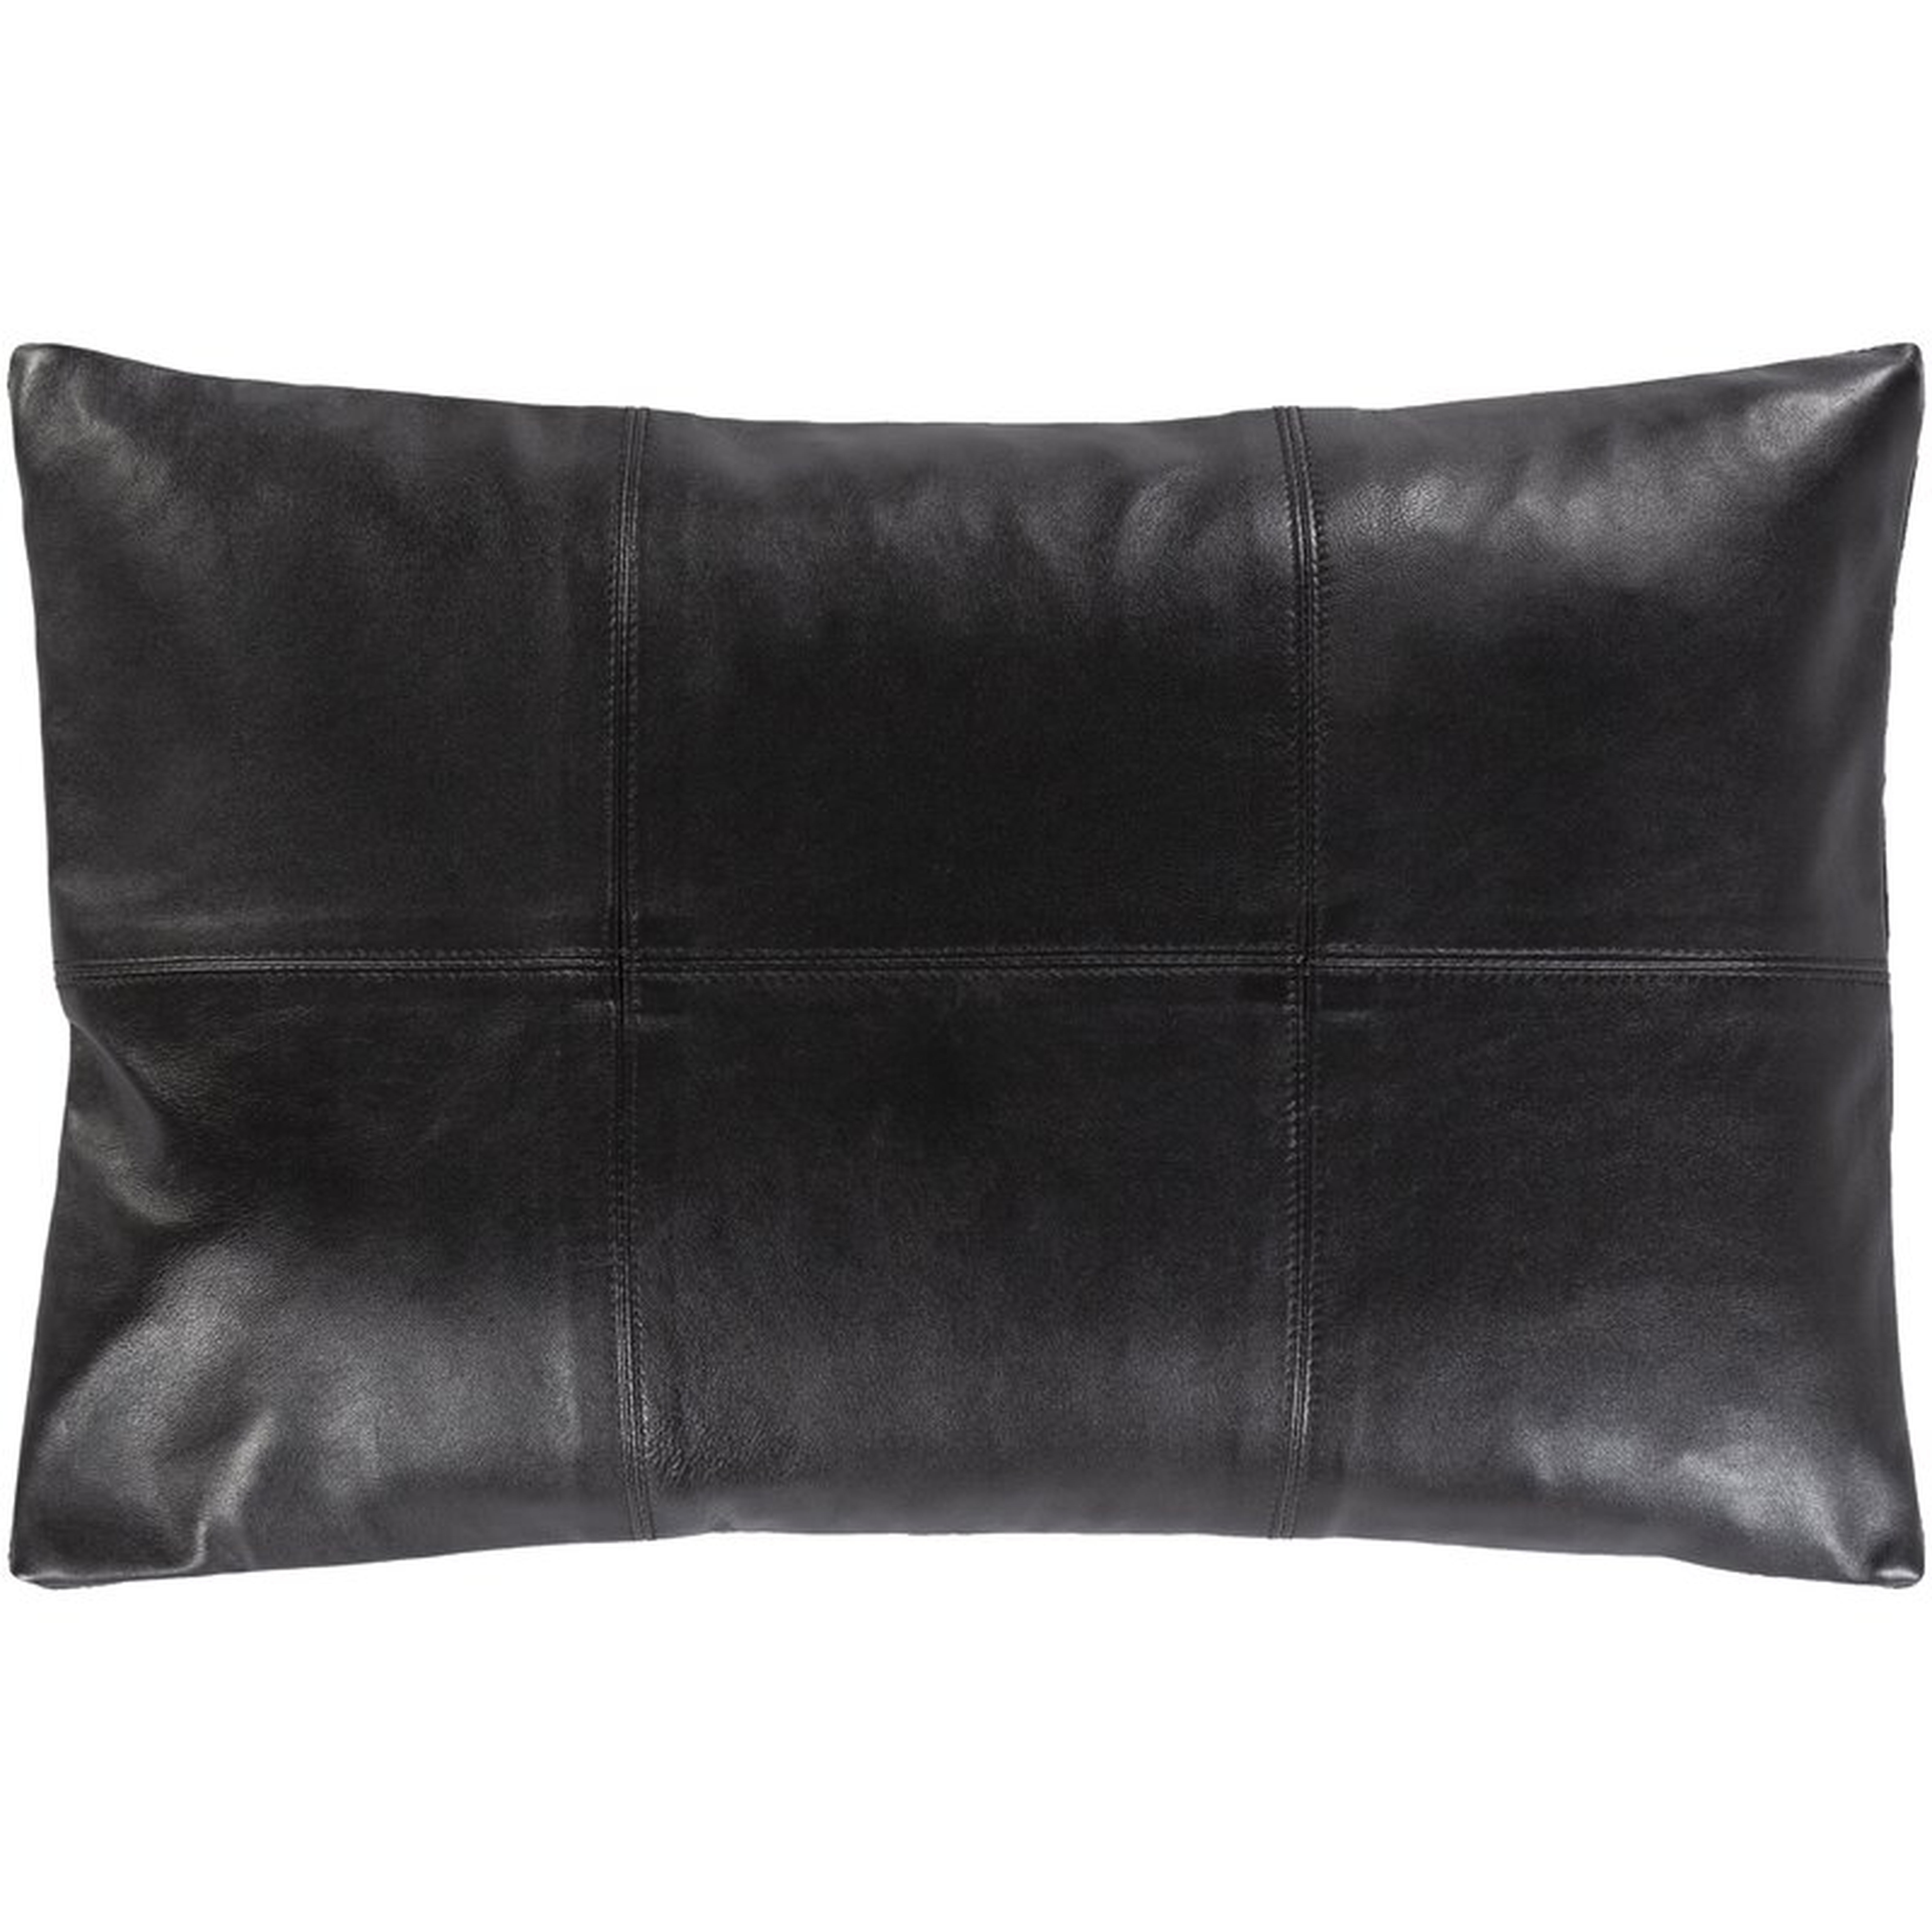 Lumbar Pillow Cover - Perigold